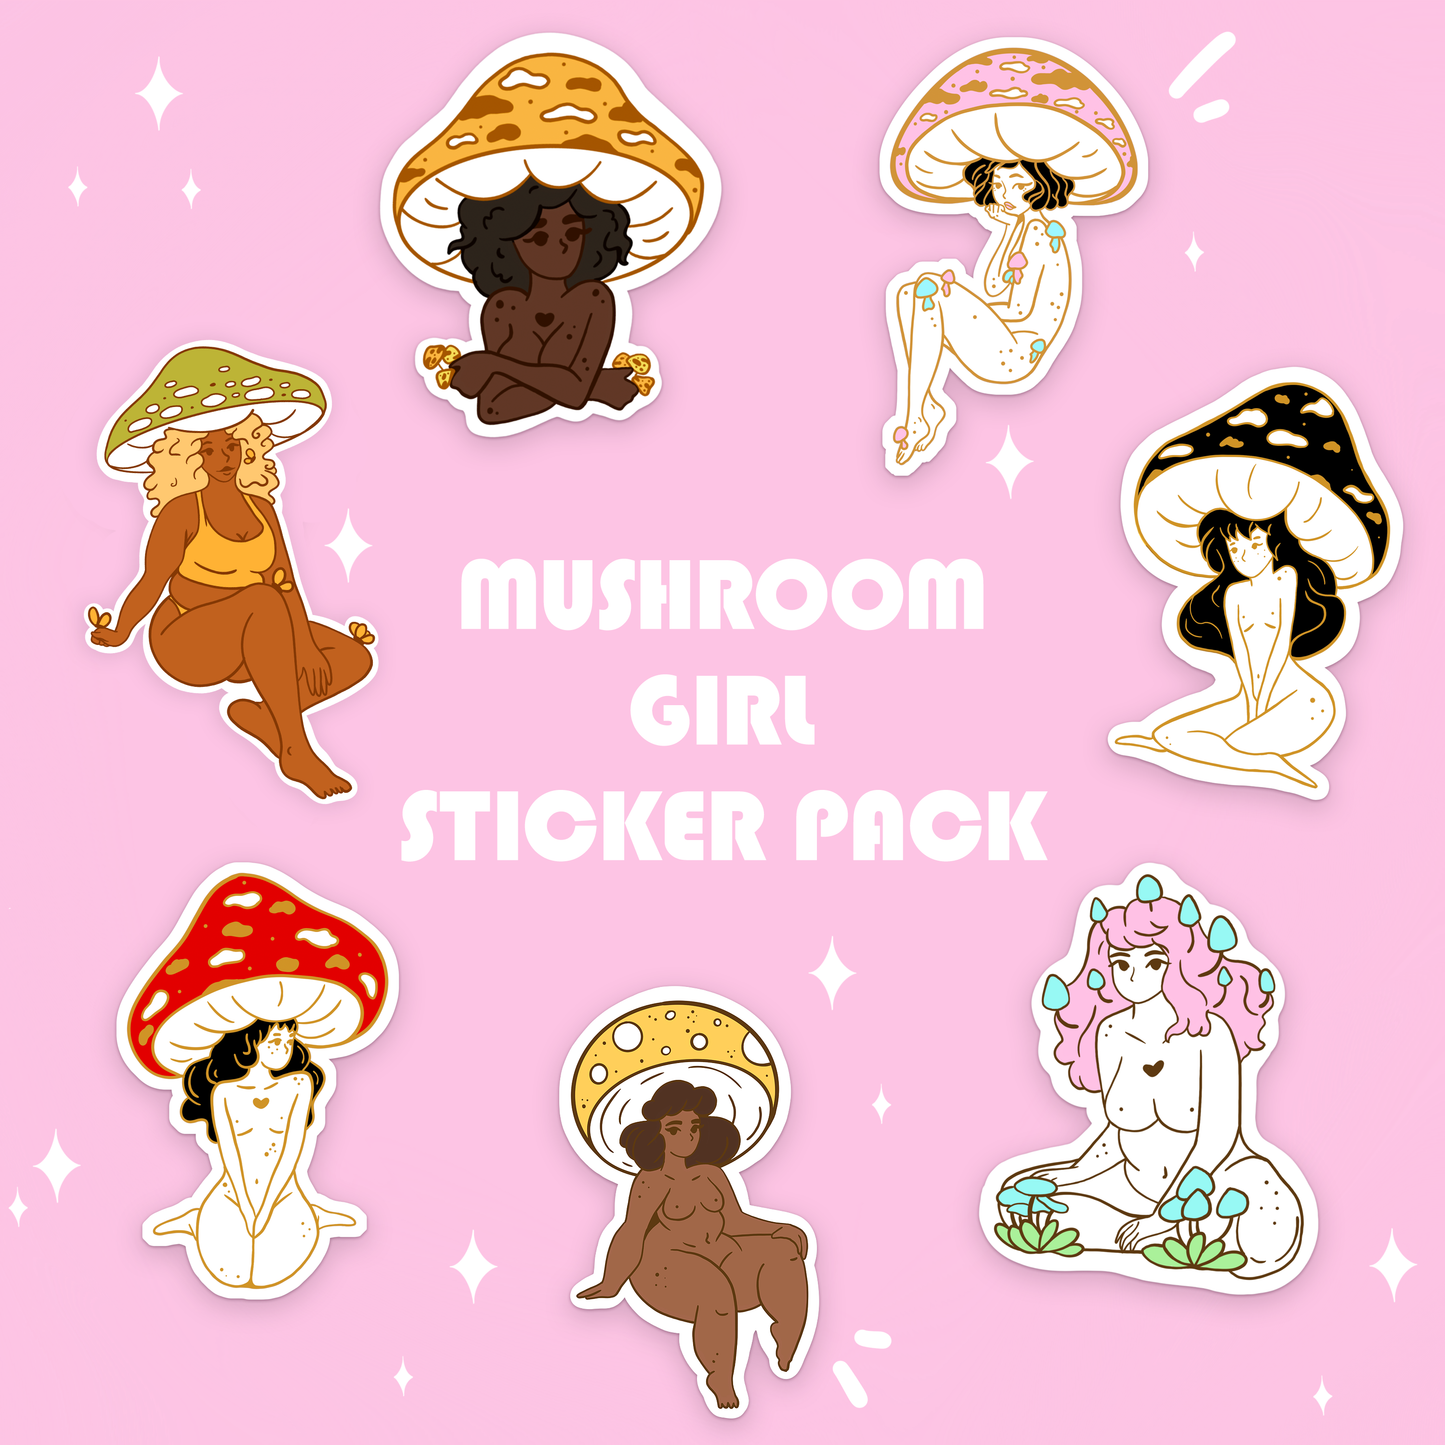 Mushroom Girl Sticker Pack!